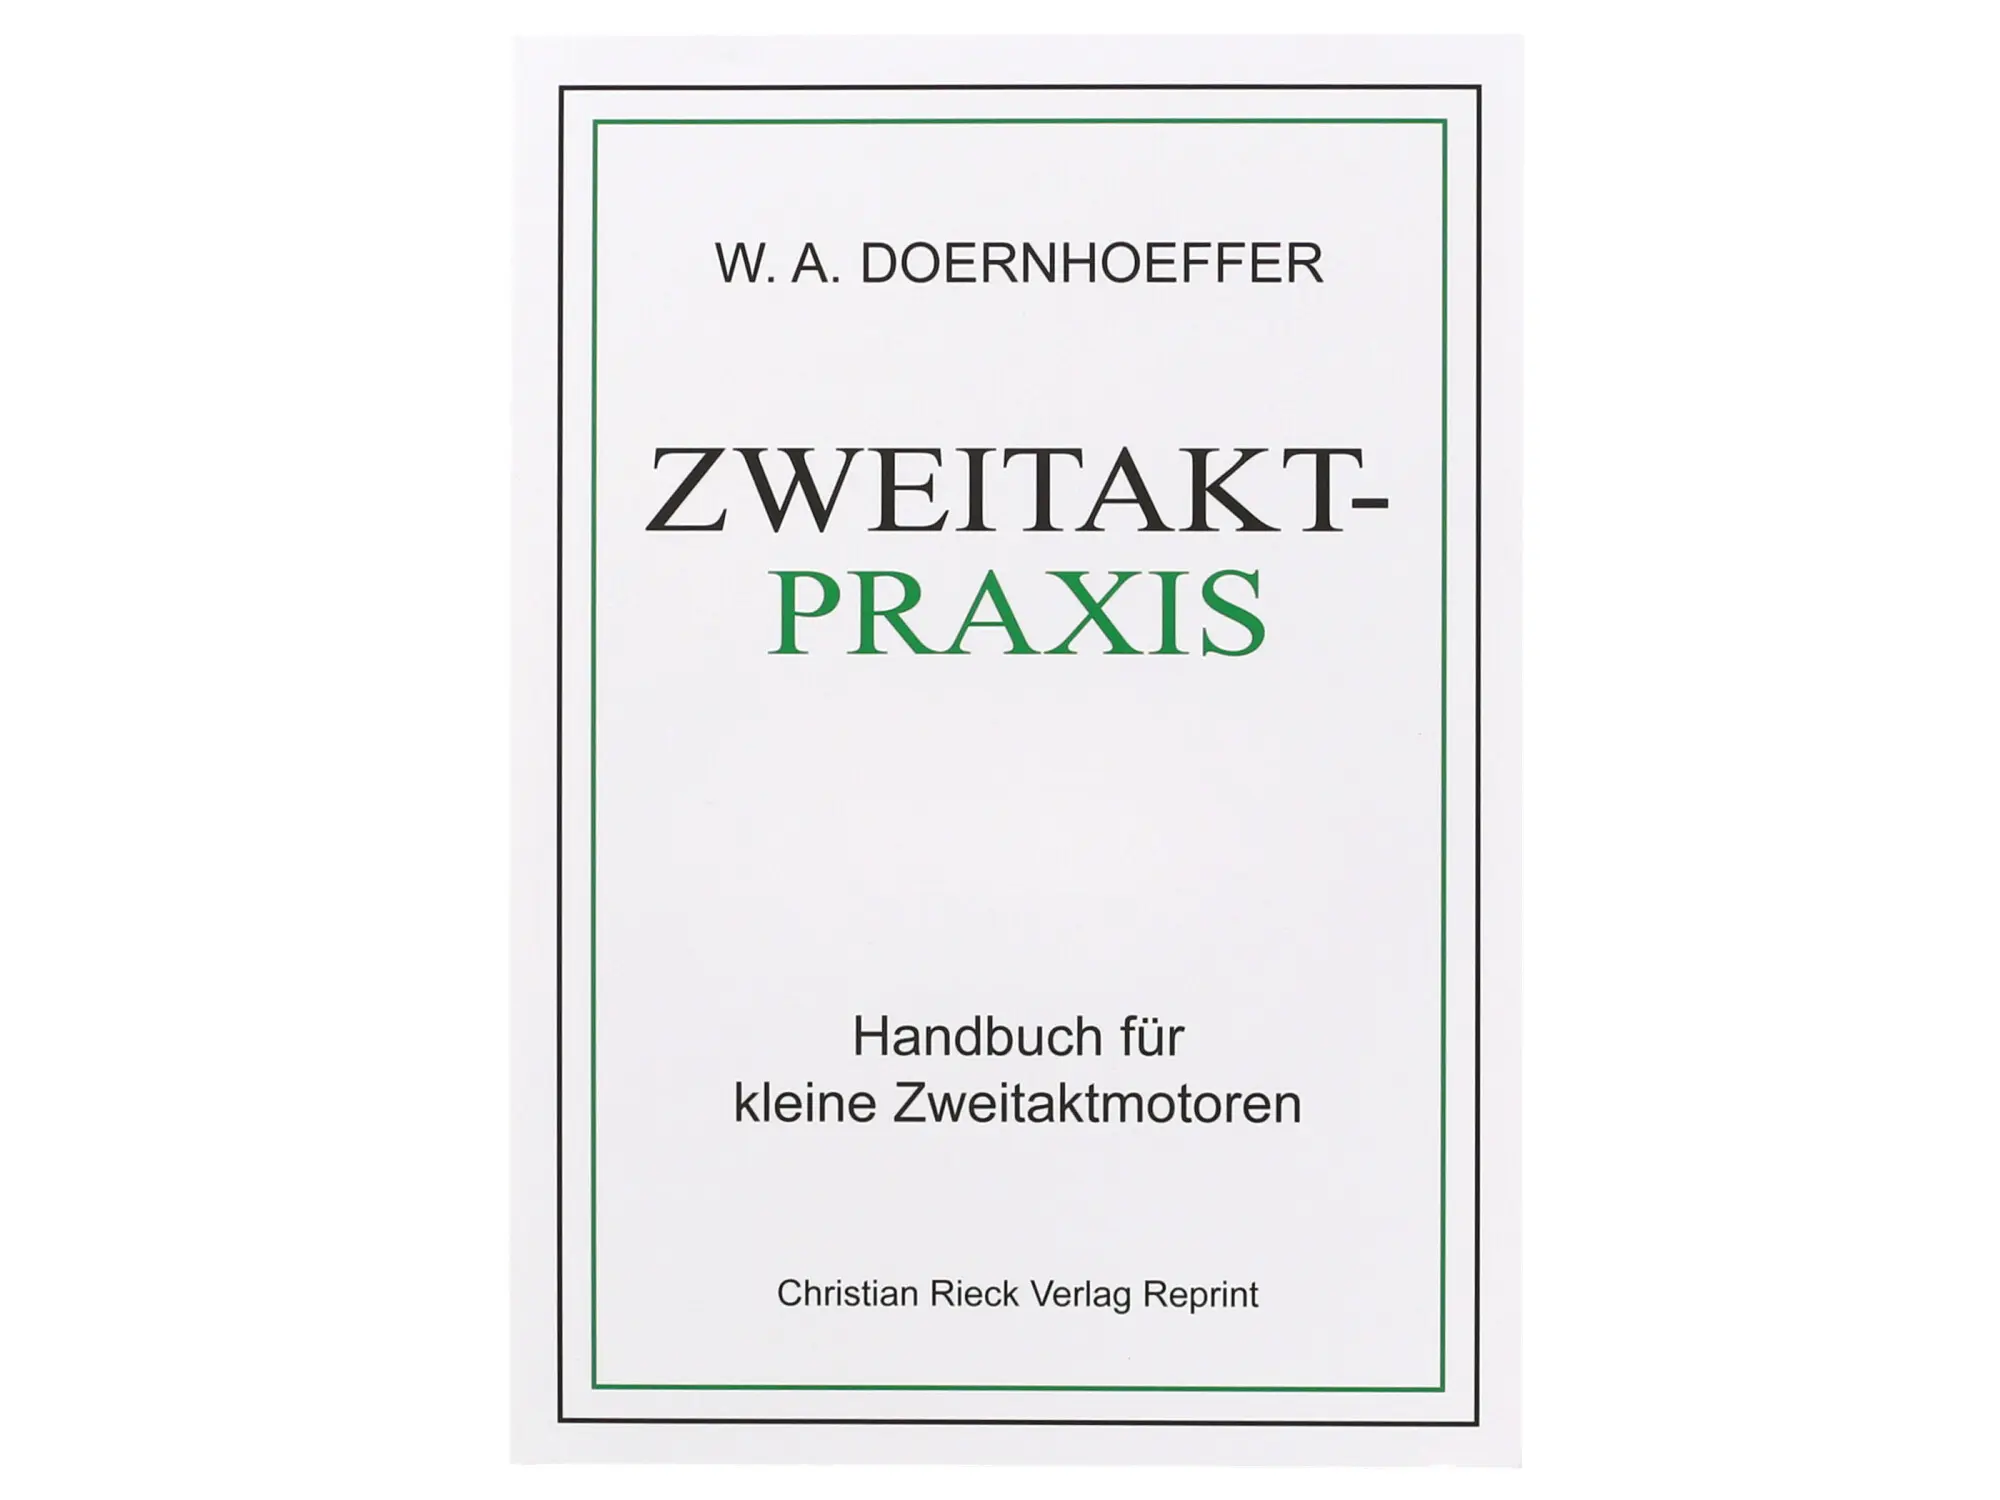 Buch - Zweitakt-Praxis - Handbuch für kleine Zweitaktmotoren, Art.-Nr.: 10070564 - Bild 1